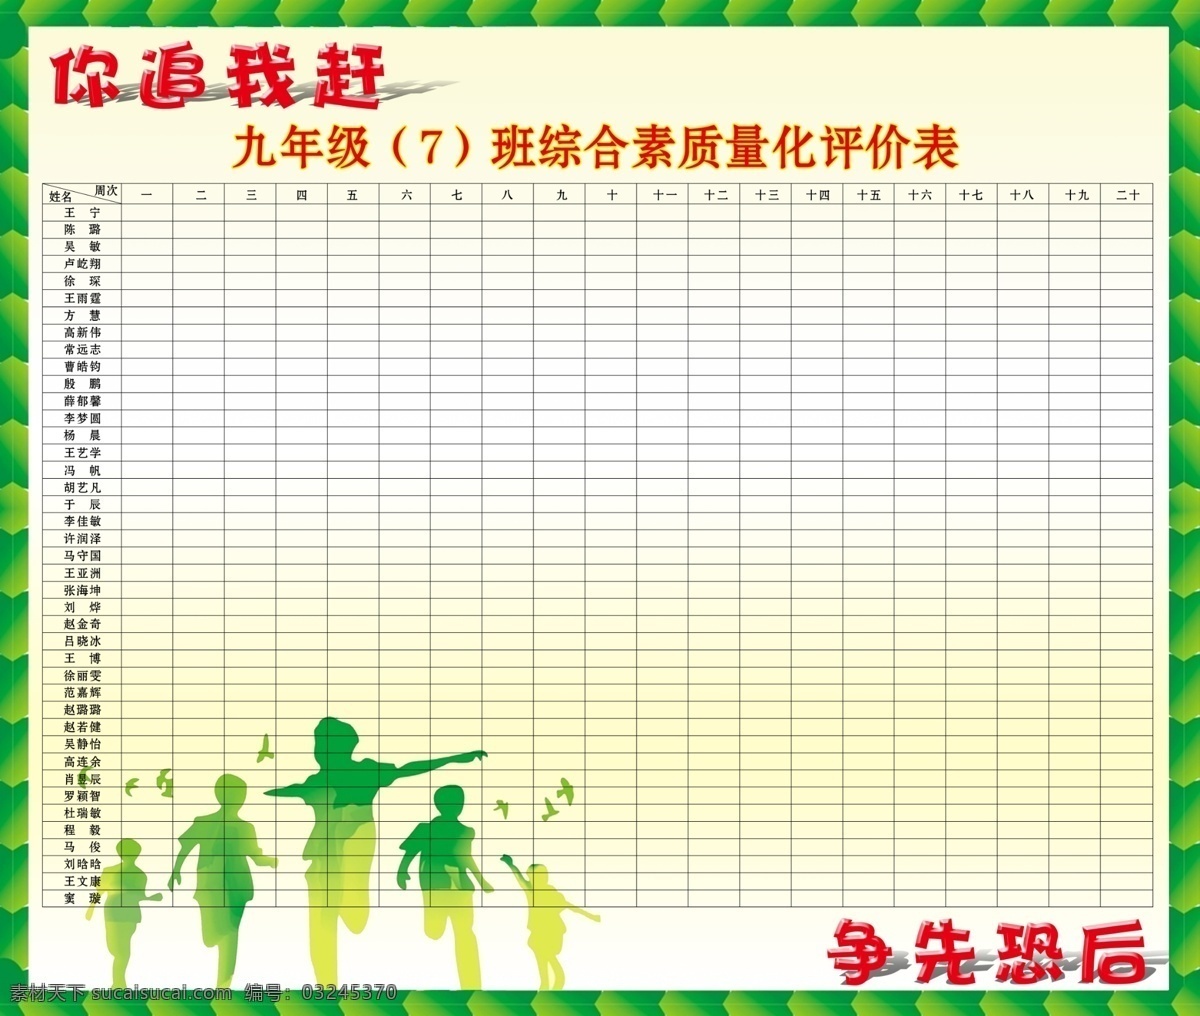 票价表 绿色边框 矢量人物 黄色背景 文字 表格 展板模板